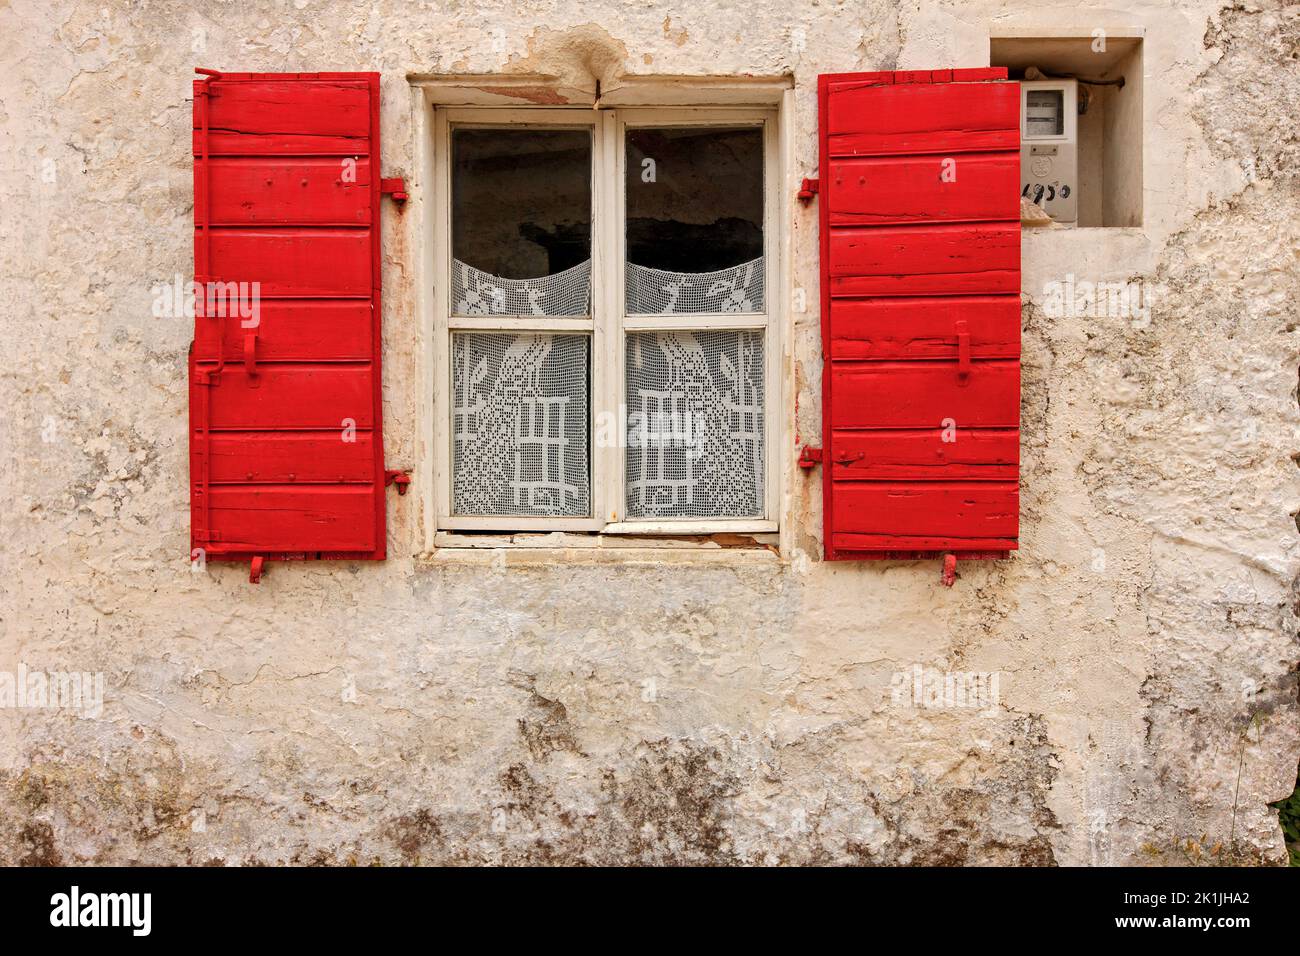 Malerische Fassade des traditionellen lokalen Hauses mit Steinmauer, rotem Fenster und aufwendigen Spitzenvorhängen, gesehen in einem Dorf der Insel Zakynthos, Griechenland Stockfoto